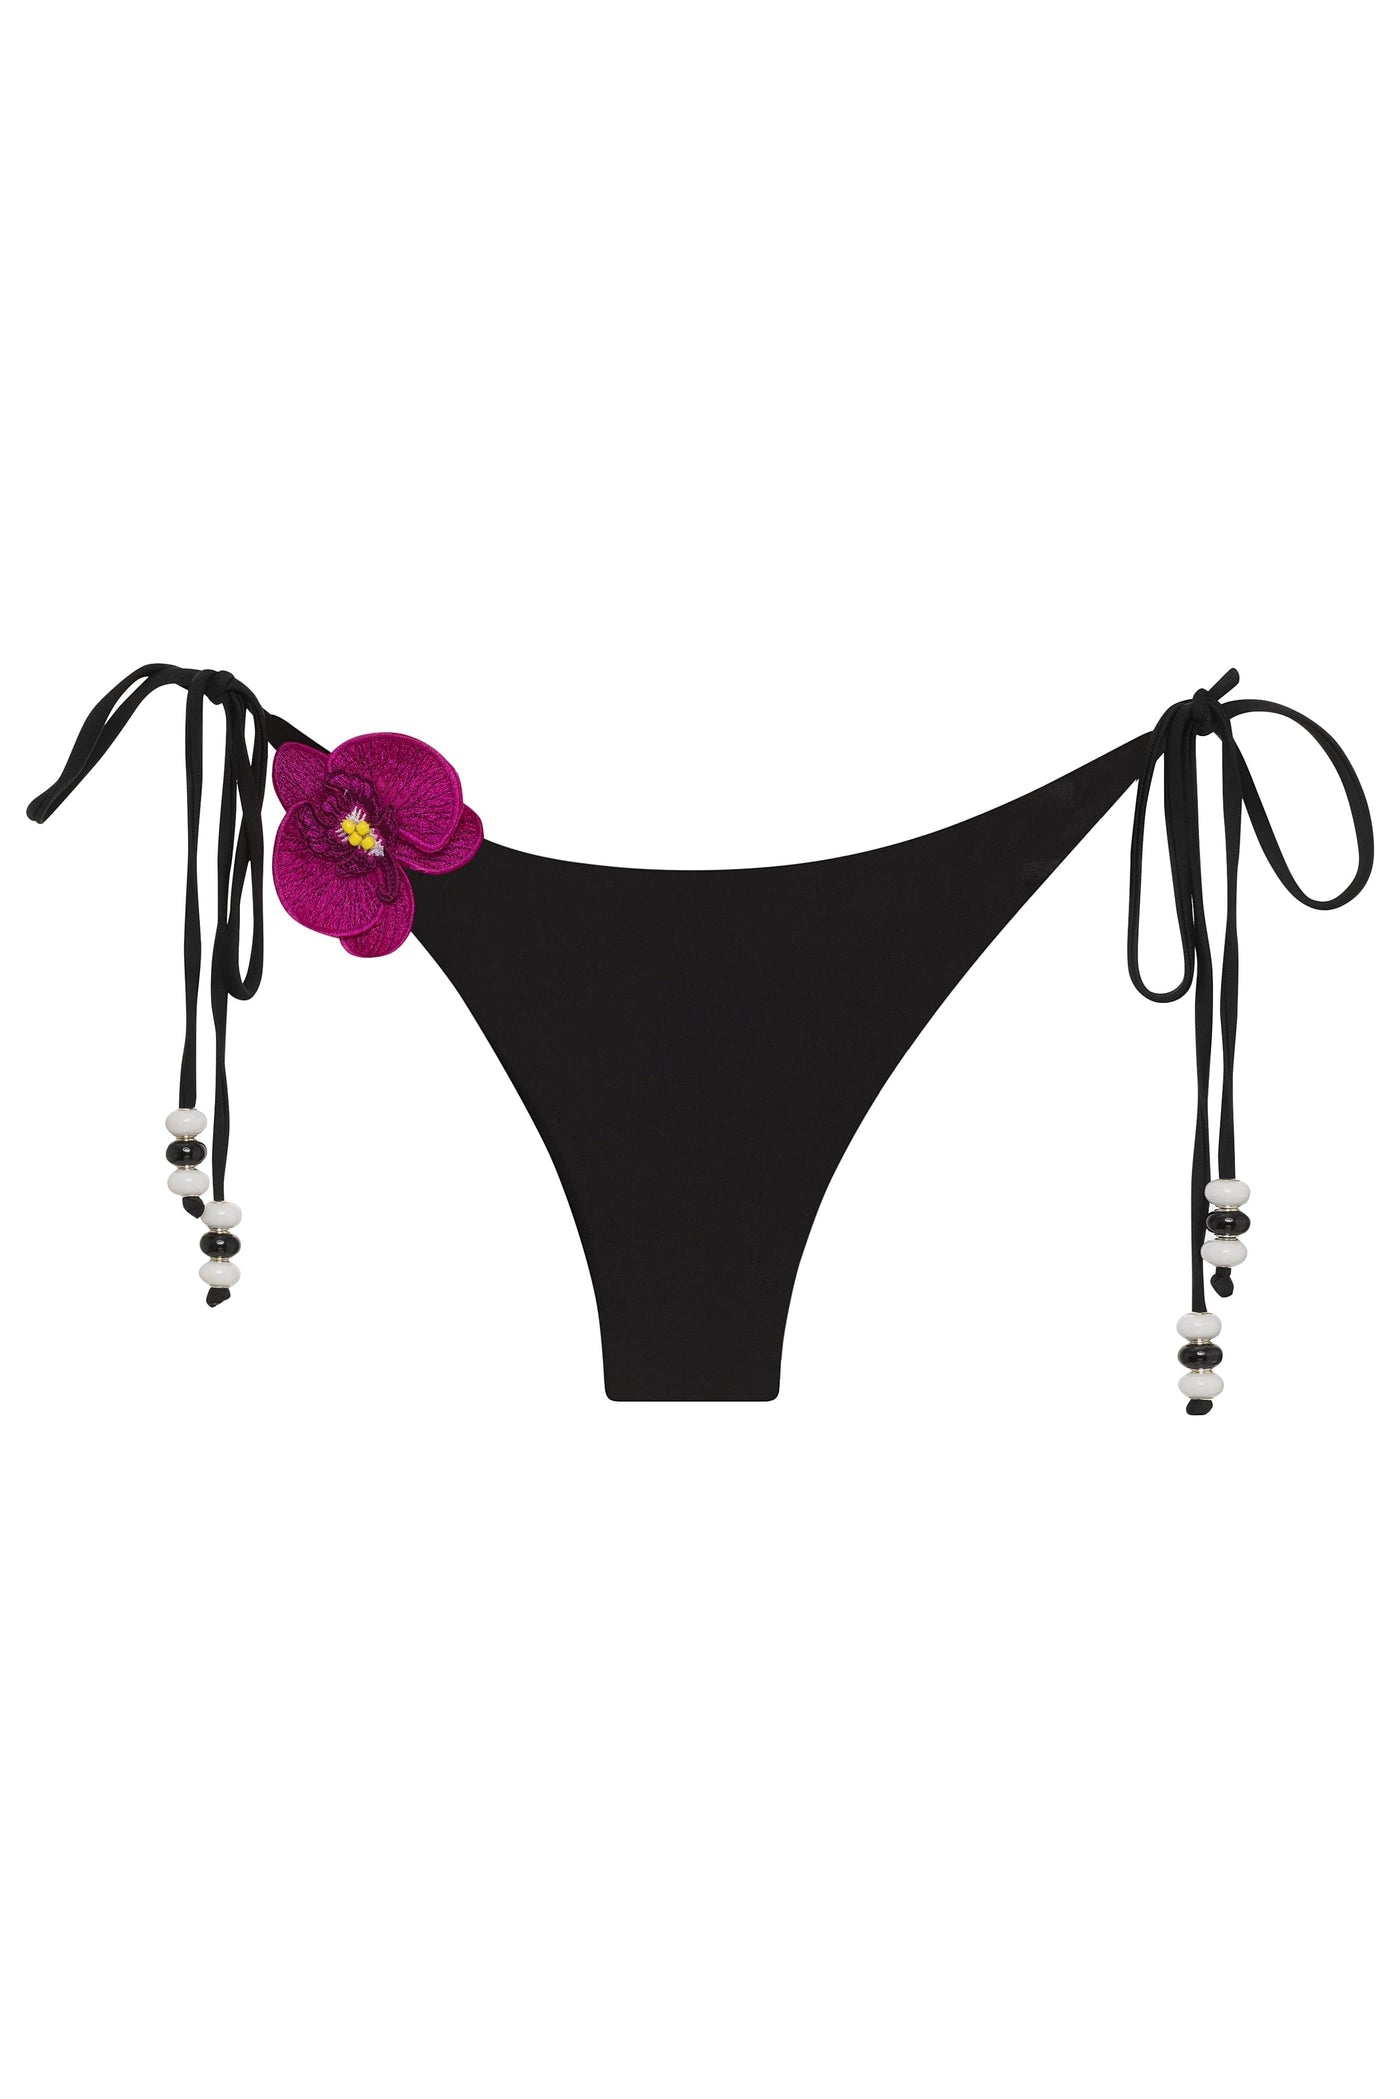 Black / XS Lycaste Fuchsia w/ Embroidered Orchid Tie Side Bikini Bottom 2022 Nikoza Swimwear Lycaste Fuchsia Designer Tie Side Bikini Bottom Olga Nikoza Swimwear